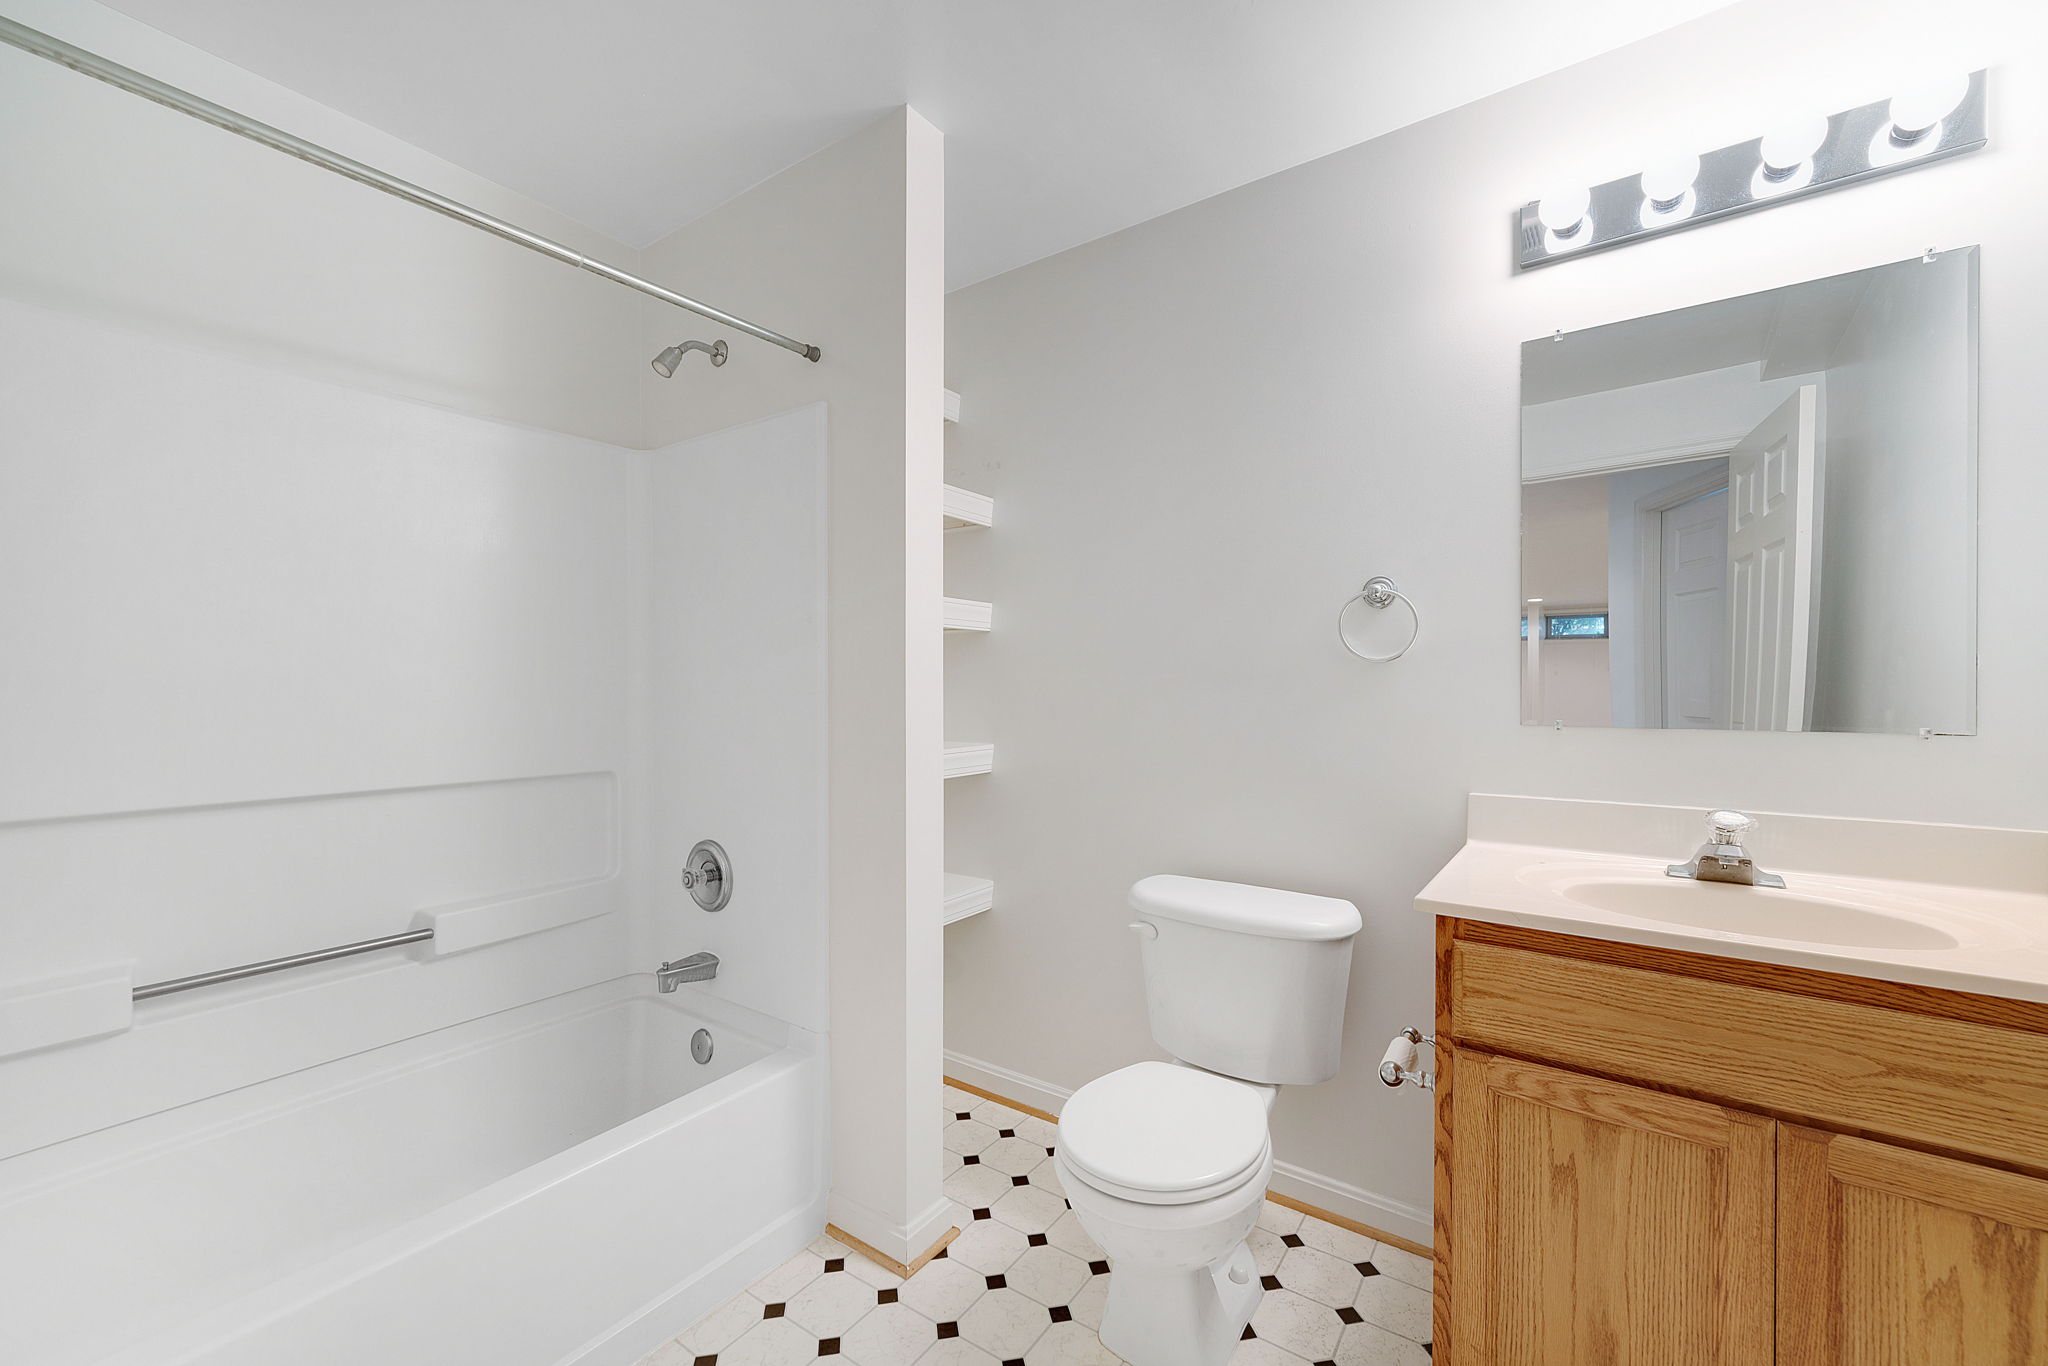 Additional Full Bath w/ Built-In Linen Shelves